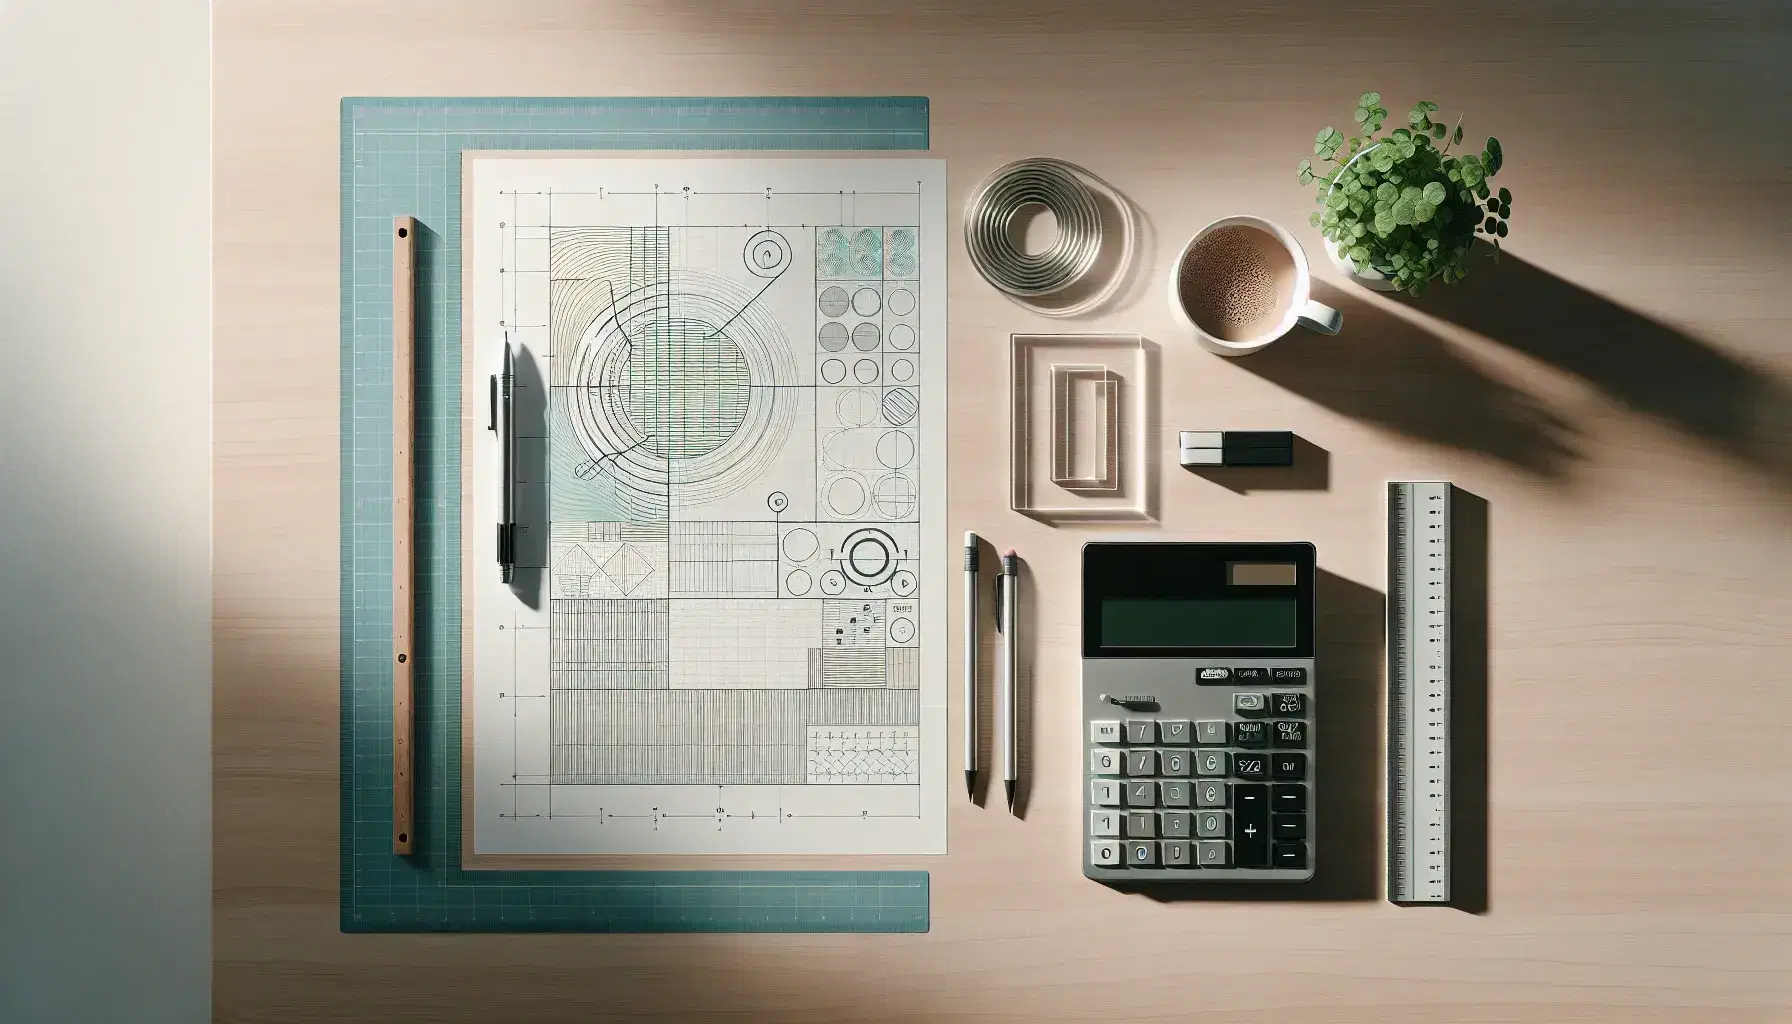 Escritorio de madera clara con papel en blanco y diagrama geométrico, lápiz mecánico, regla, calculadora apagada, taza de café y planta verde.